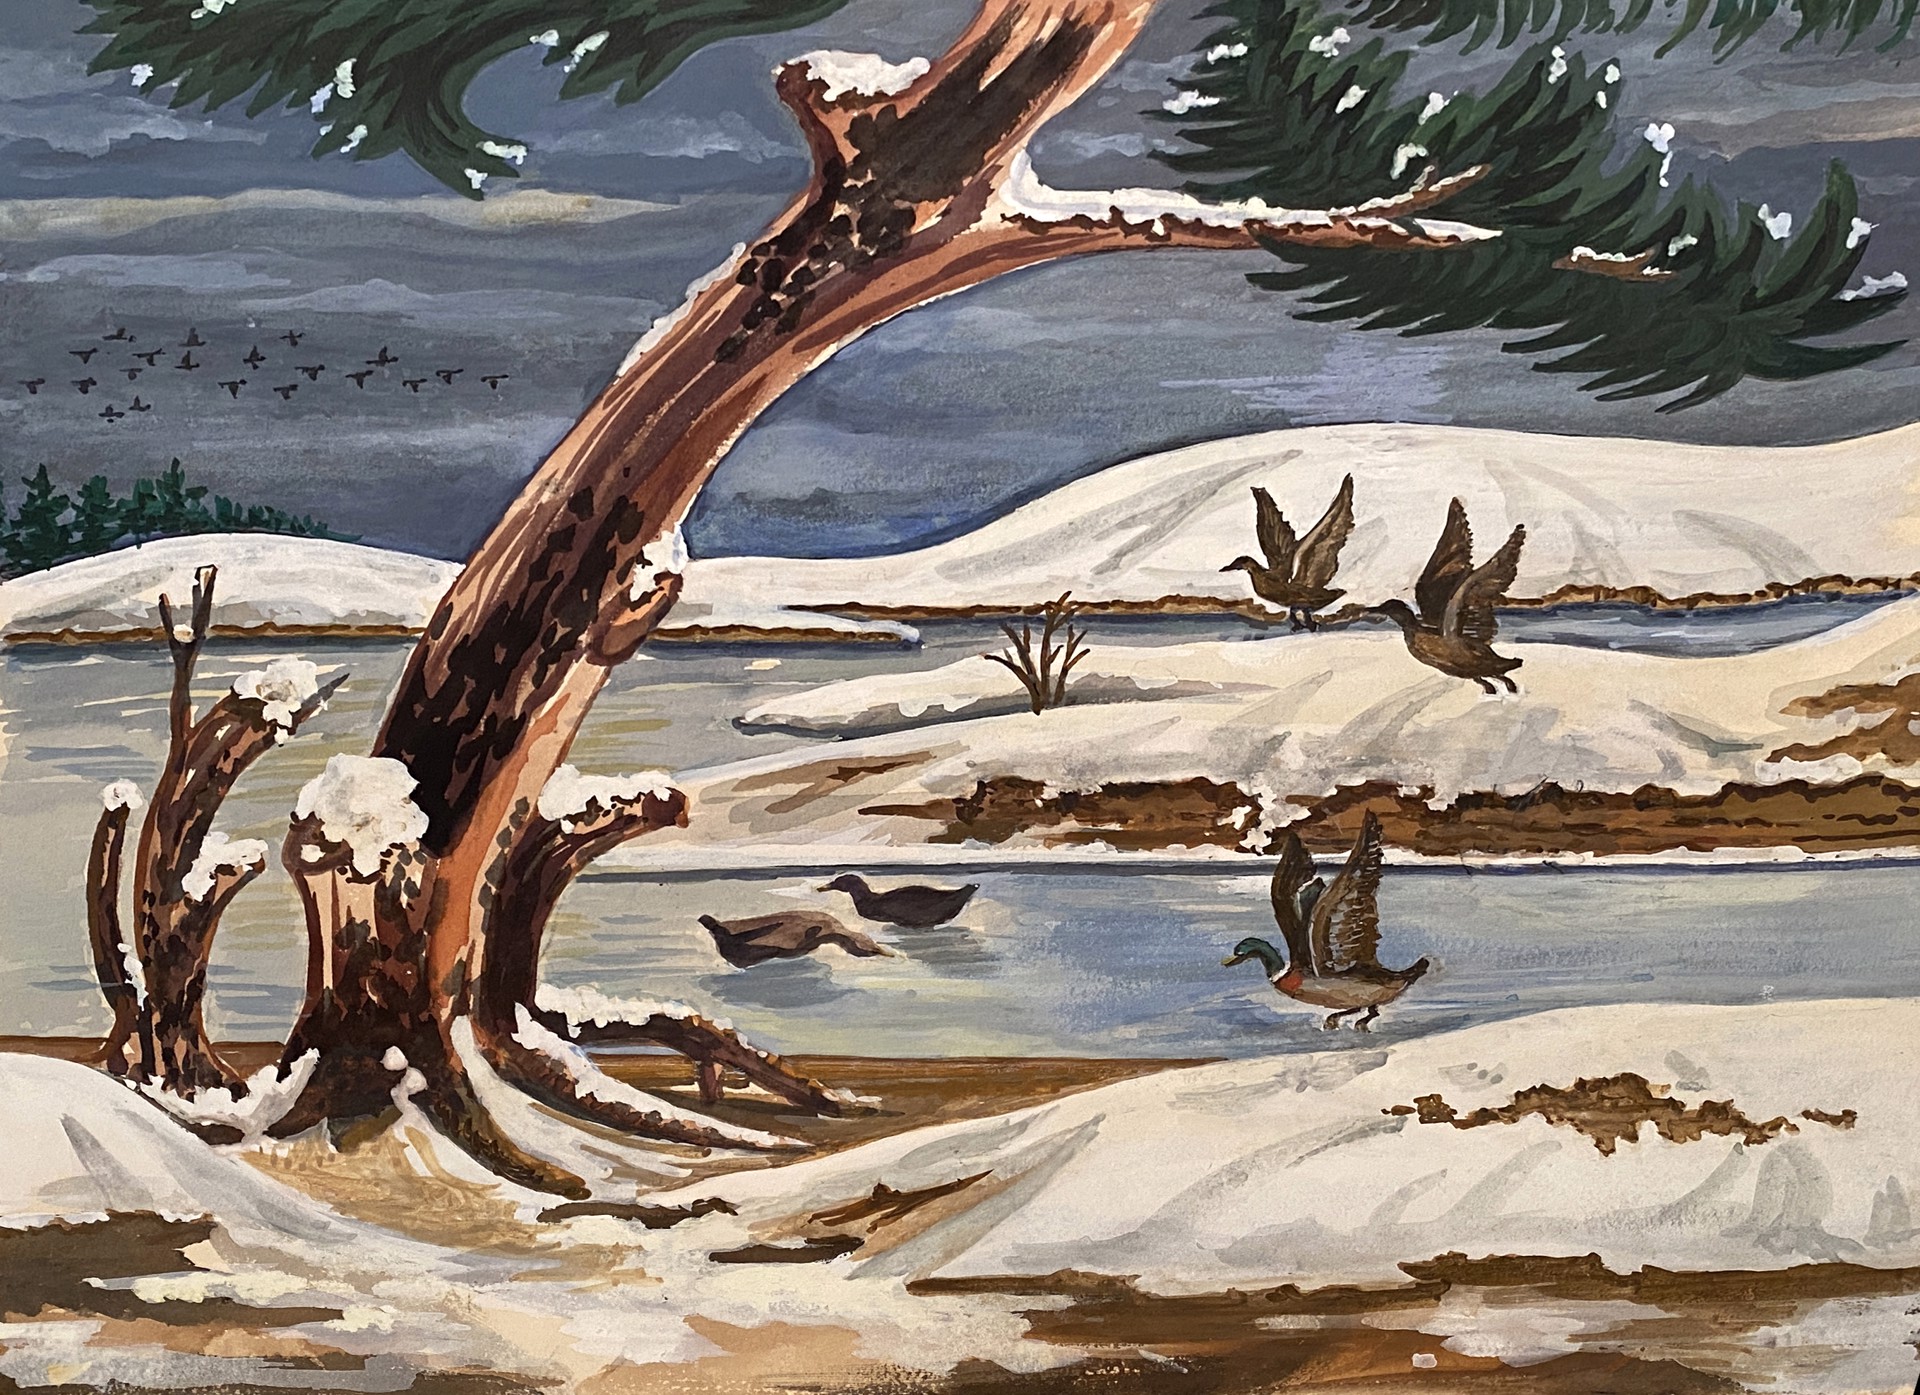 Geese in Snow by Grace A. Crockett